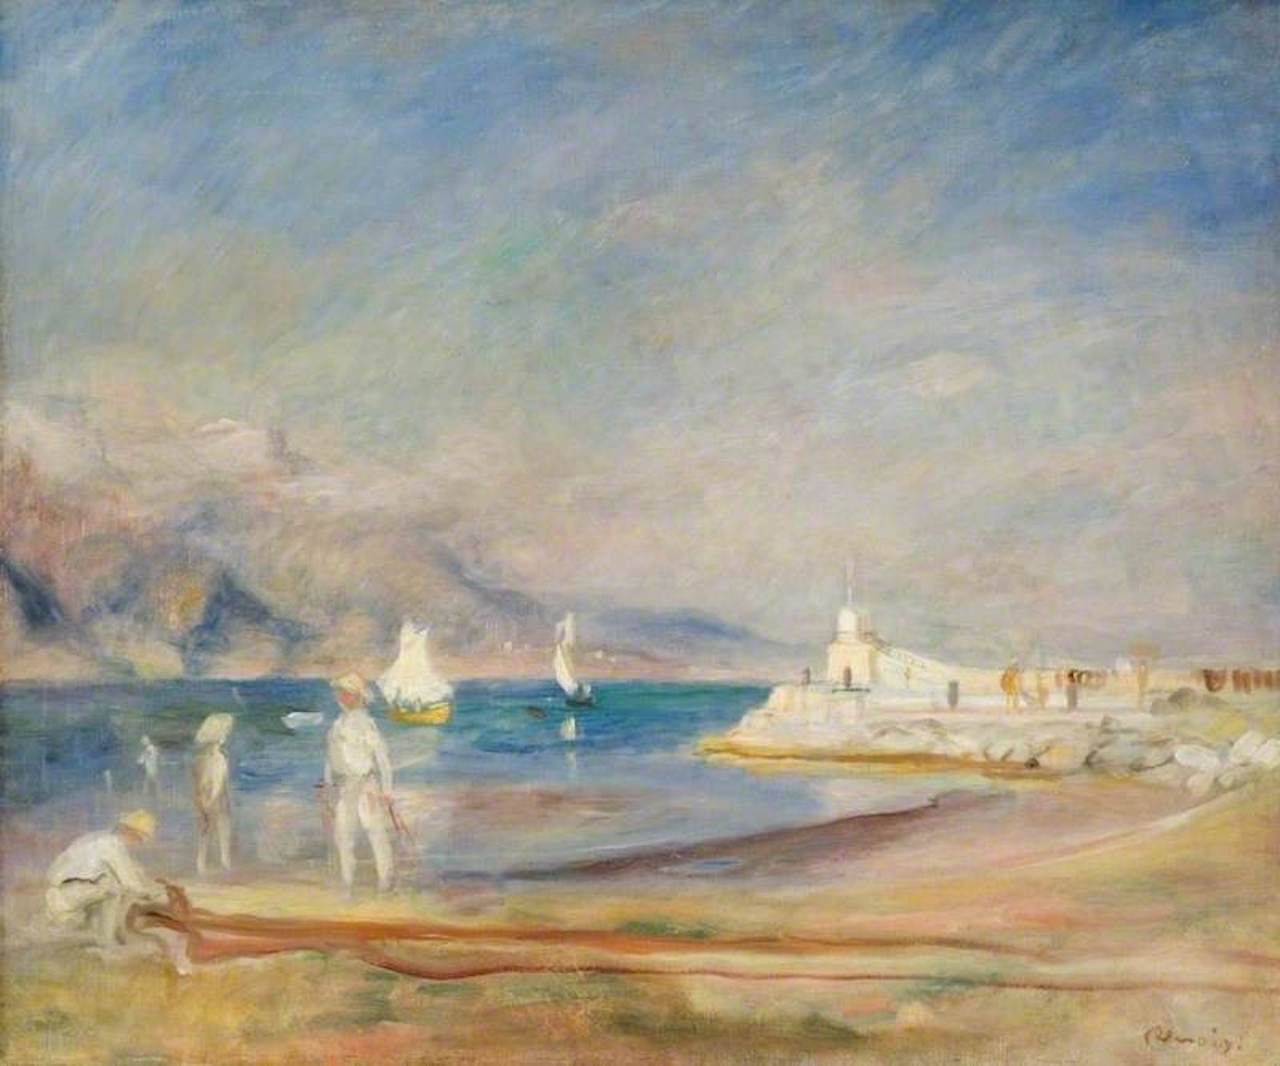 سن تروپه by Pierre-Auguste Renoir - 1902 